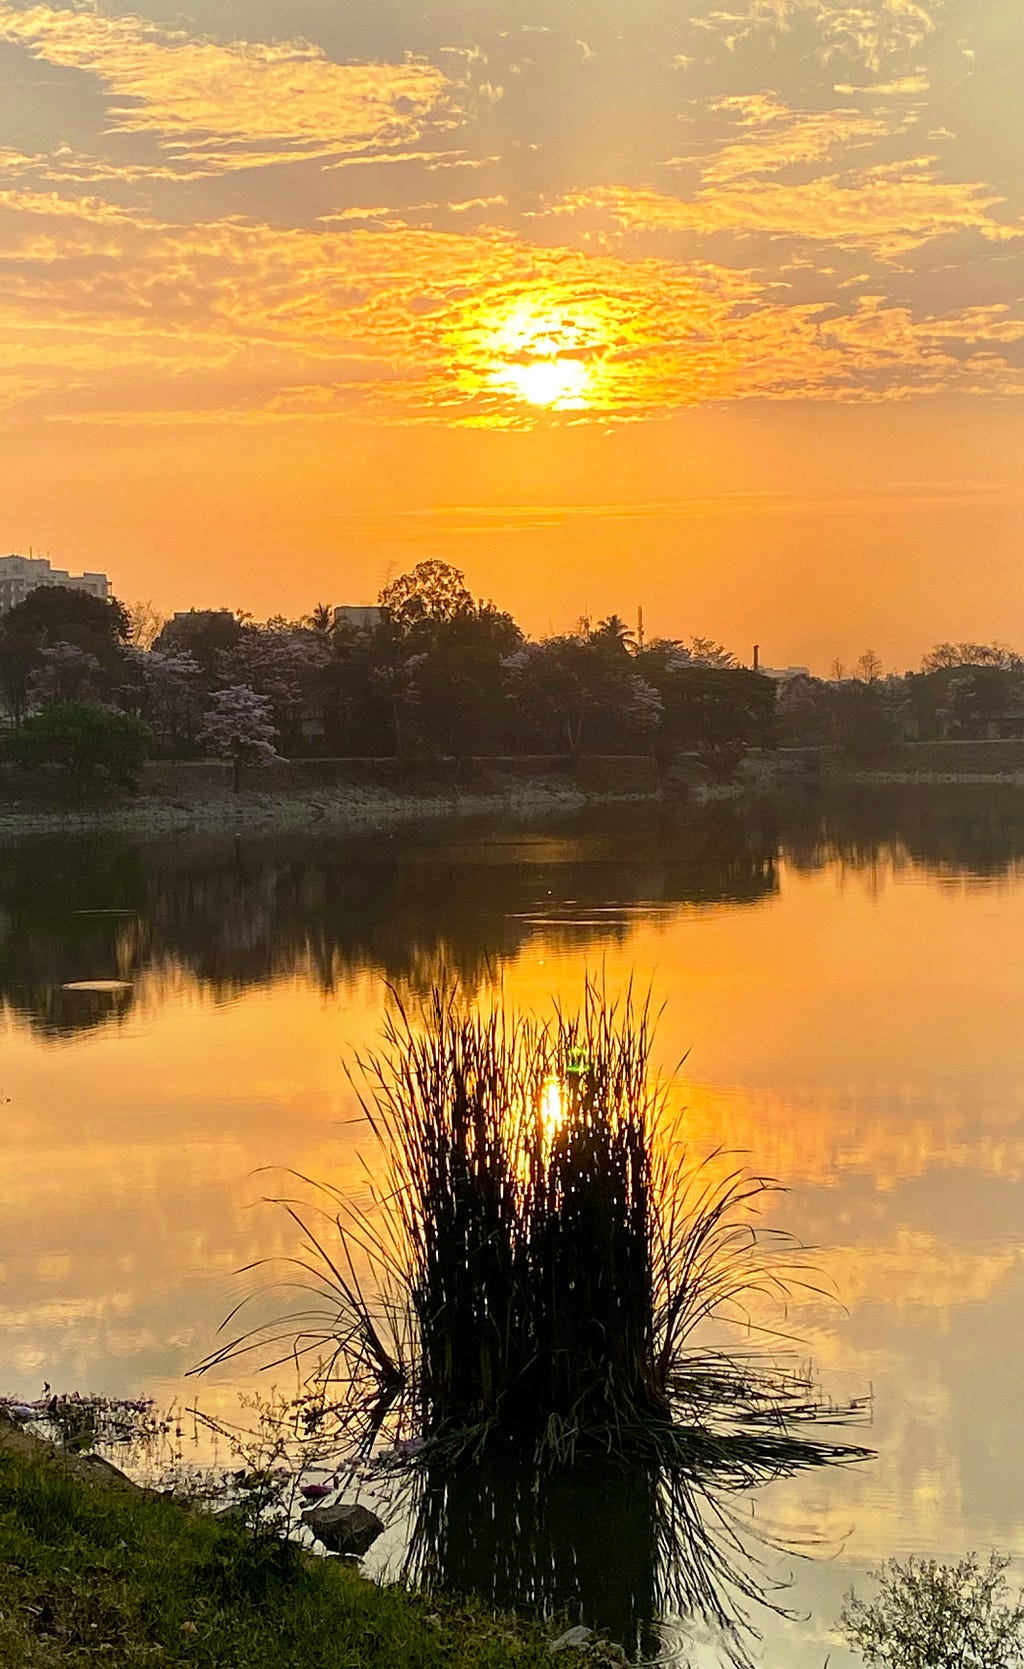 Sunrise over a lake